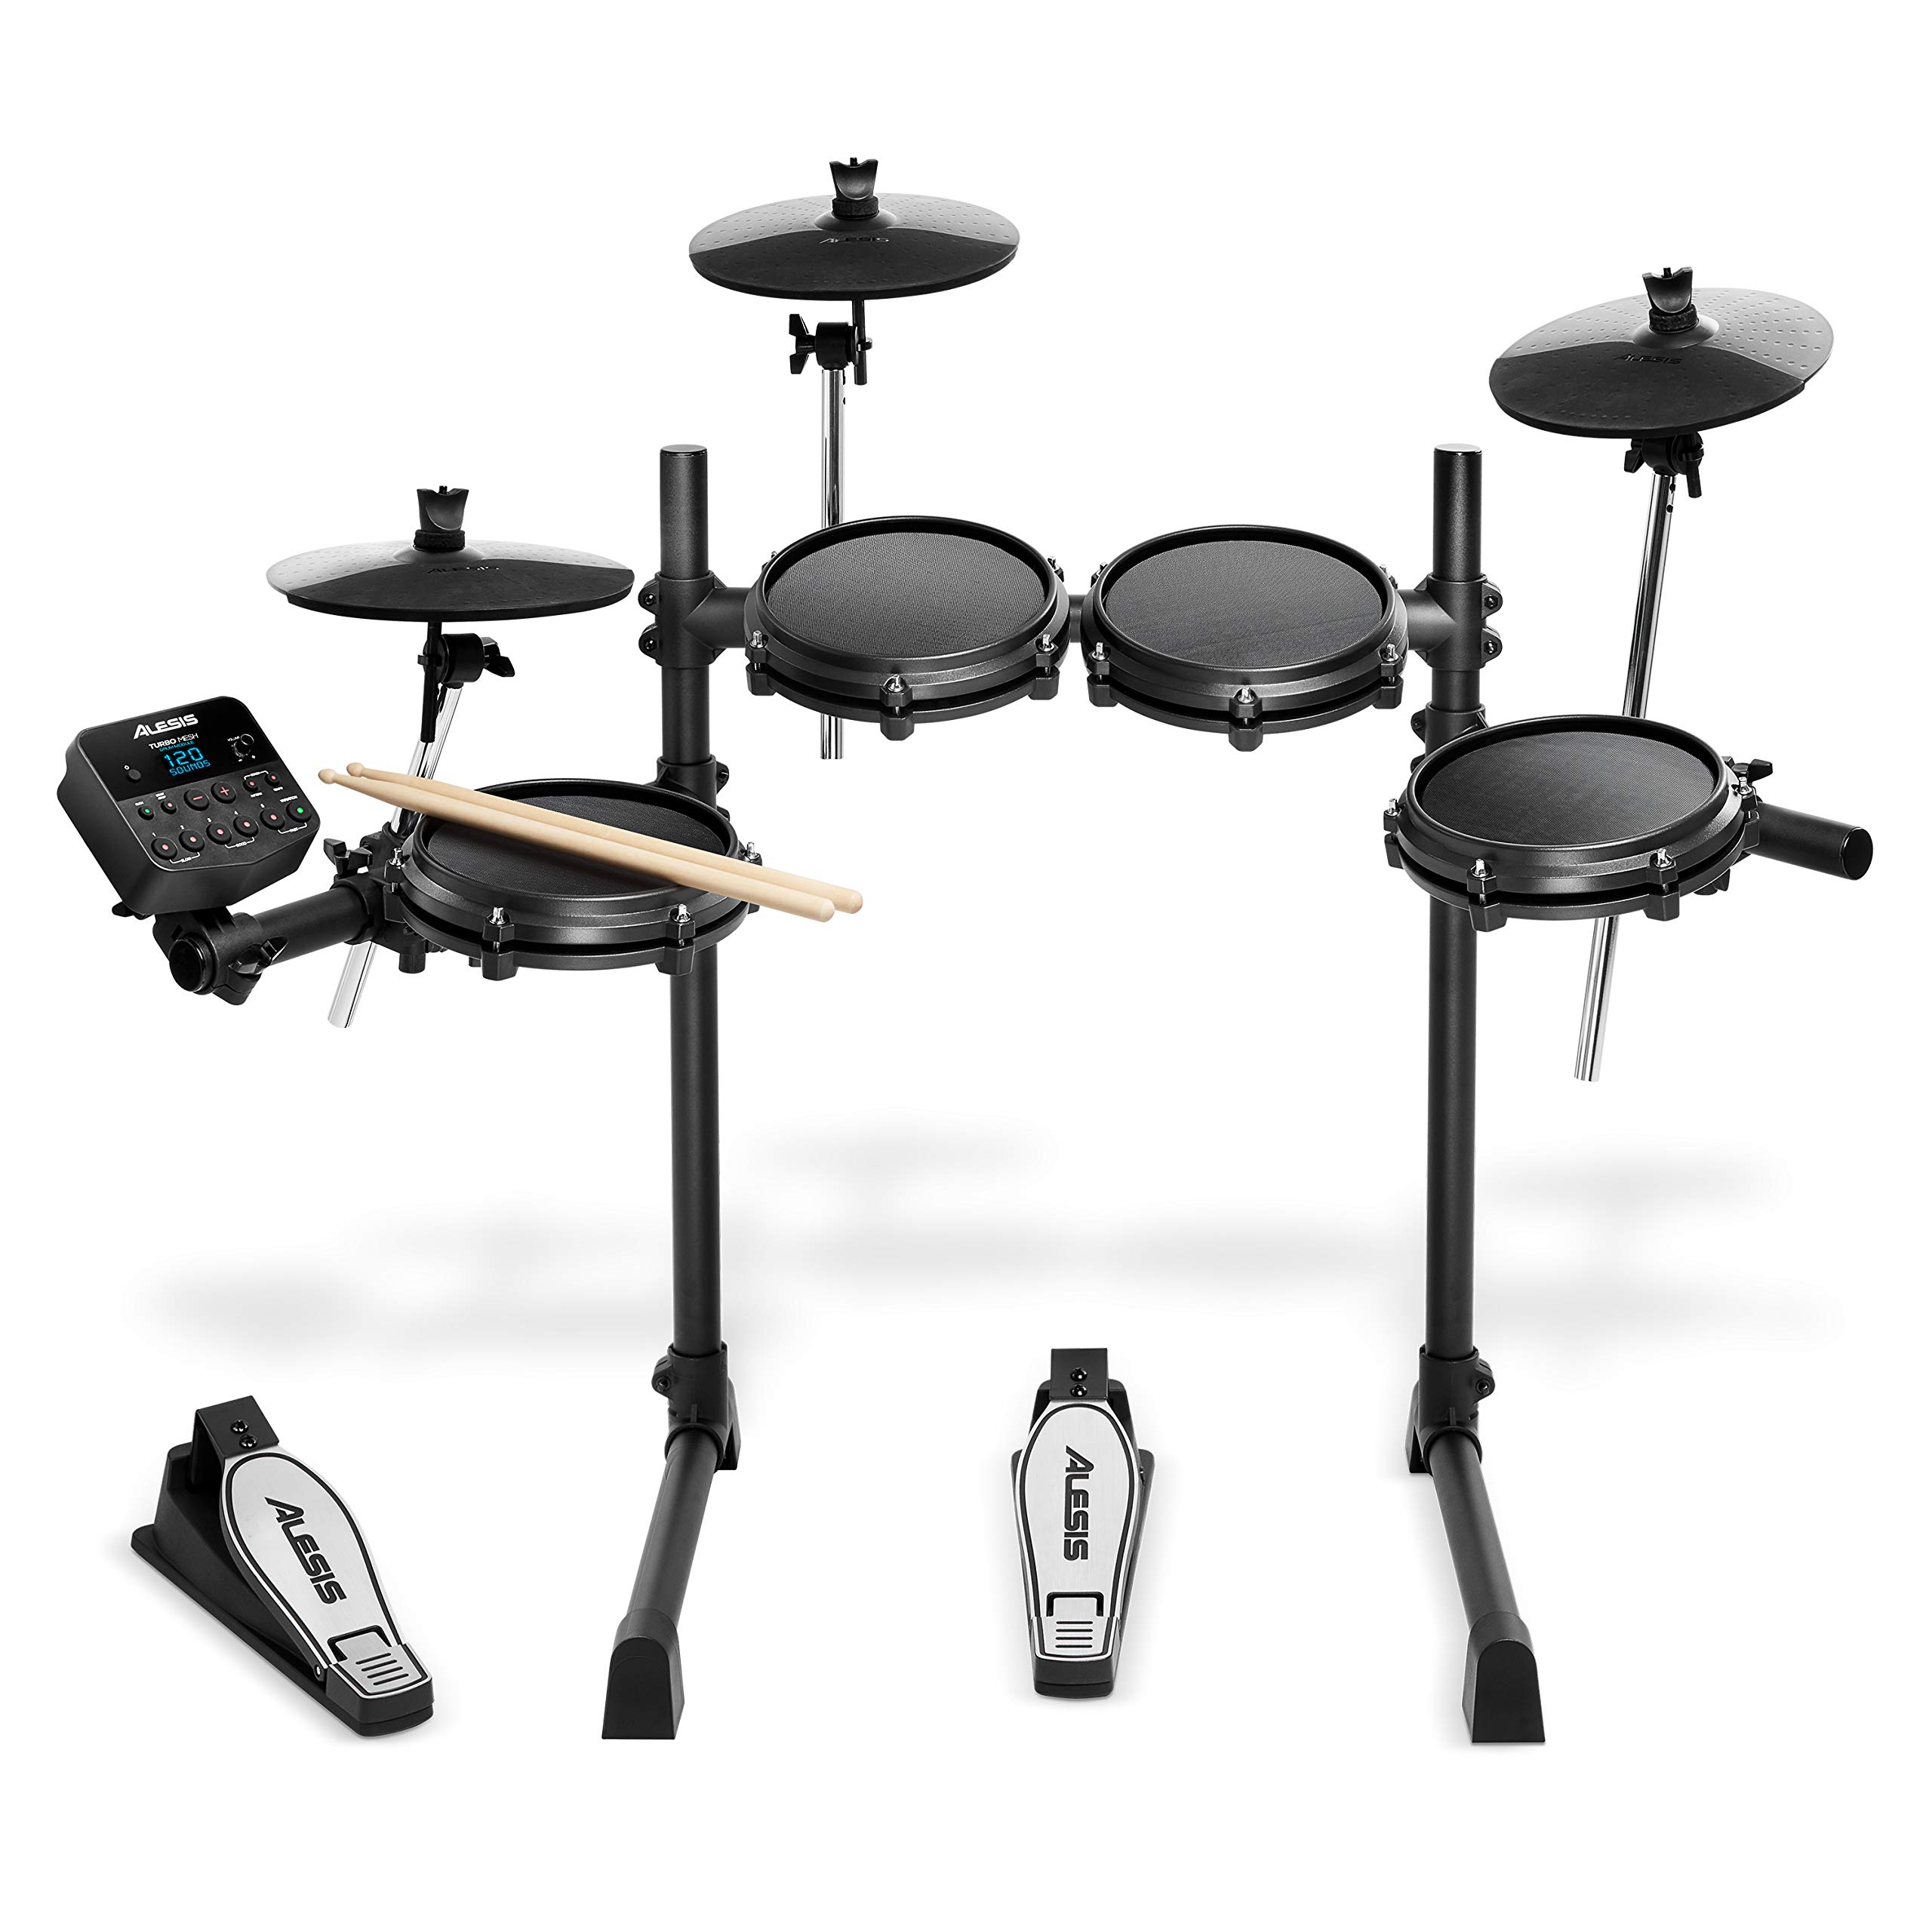 Alesis Drums Turbo Mesh 套件 - 七件式网状电动鼓组，具有 100 多种声音、30 个伴奏曲目、鼓棒和连接电缆